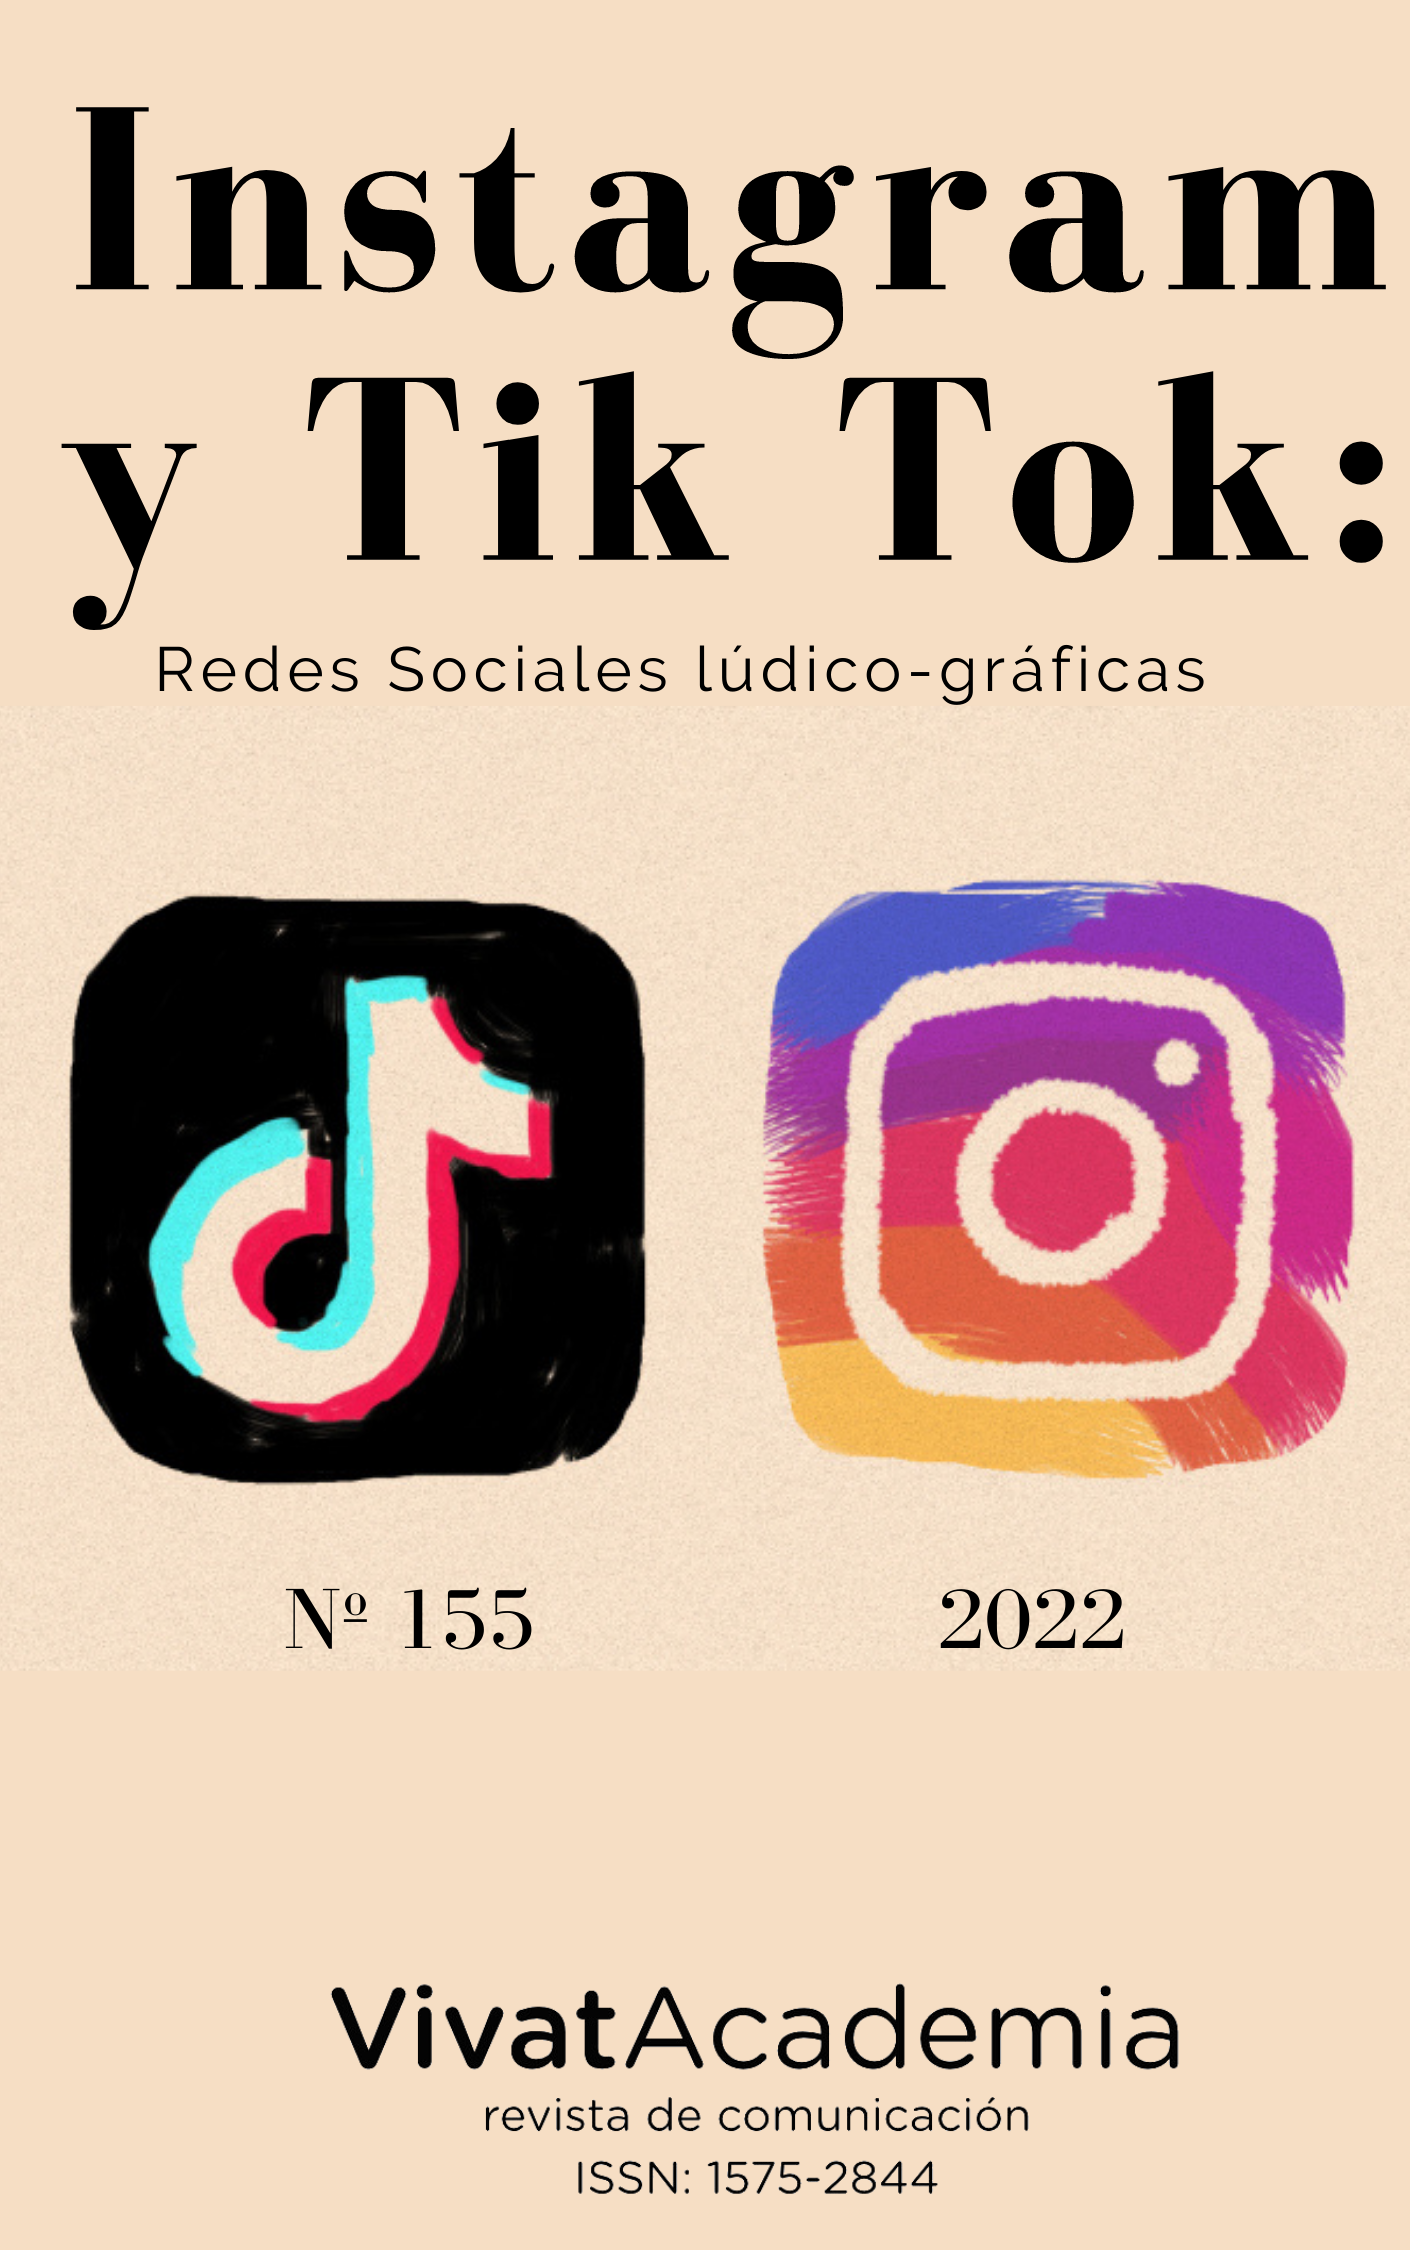 Portada del monográfico de Instagram y Tik Tok fondo beich con íconos de las respectivas redes